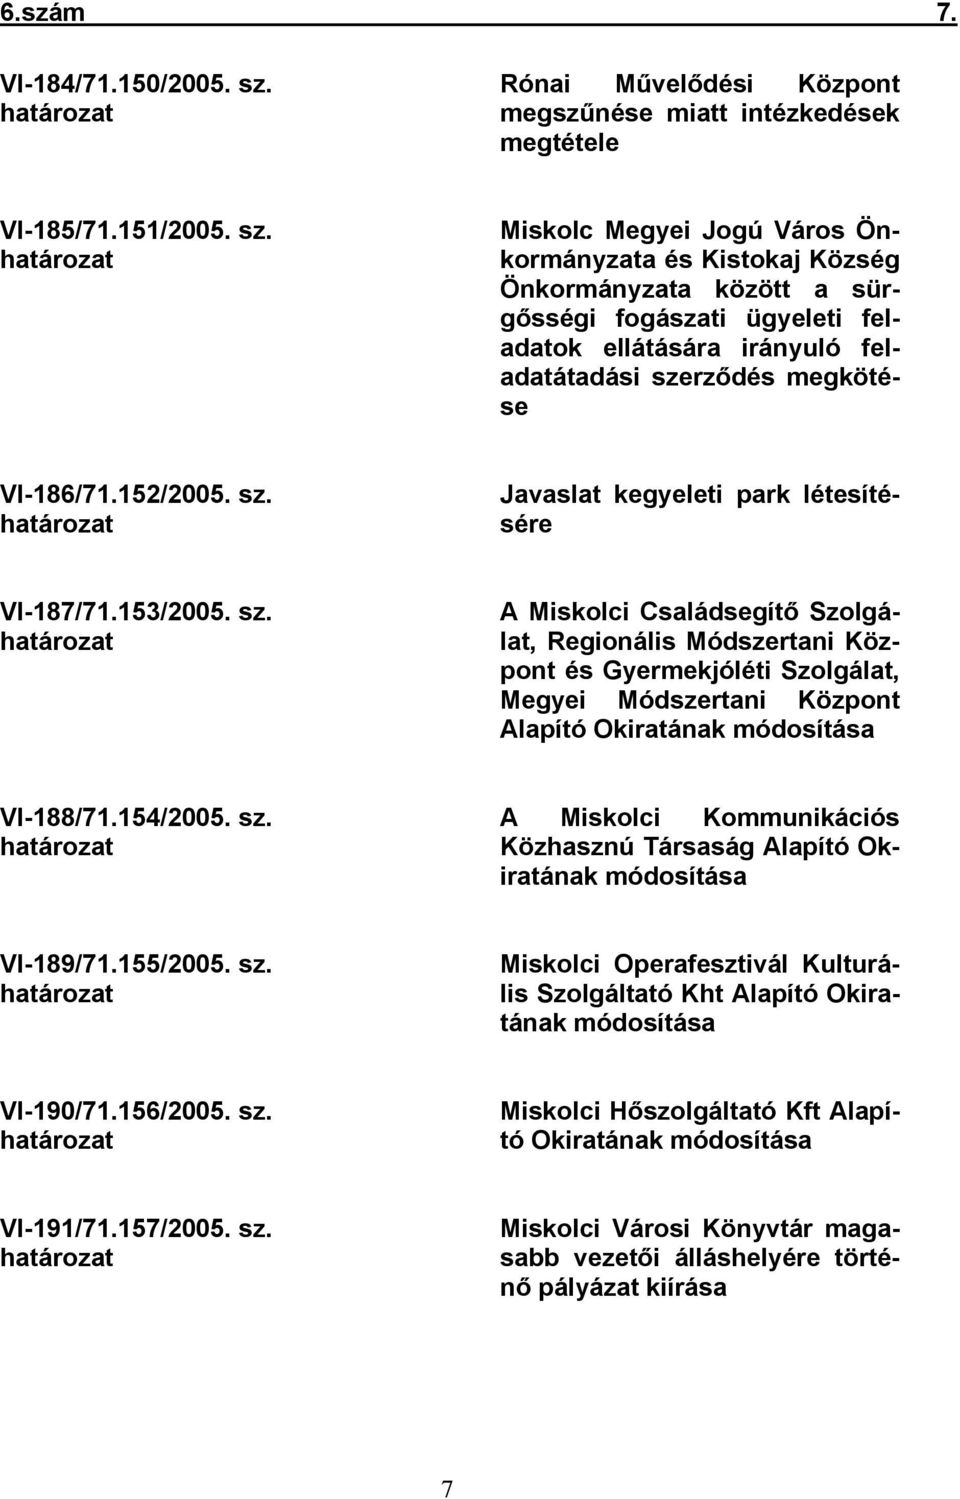 határozat Miskolc Megyei Jogú Város Önkormányzata és Kistokaj Község Önkormányzata között a sürgősségi fogászati ügyeleti feladatok ellátására irányuló feladatátadási szerződés megkötése VI-186/71.